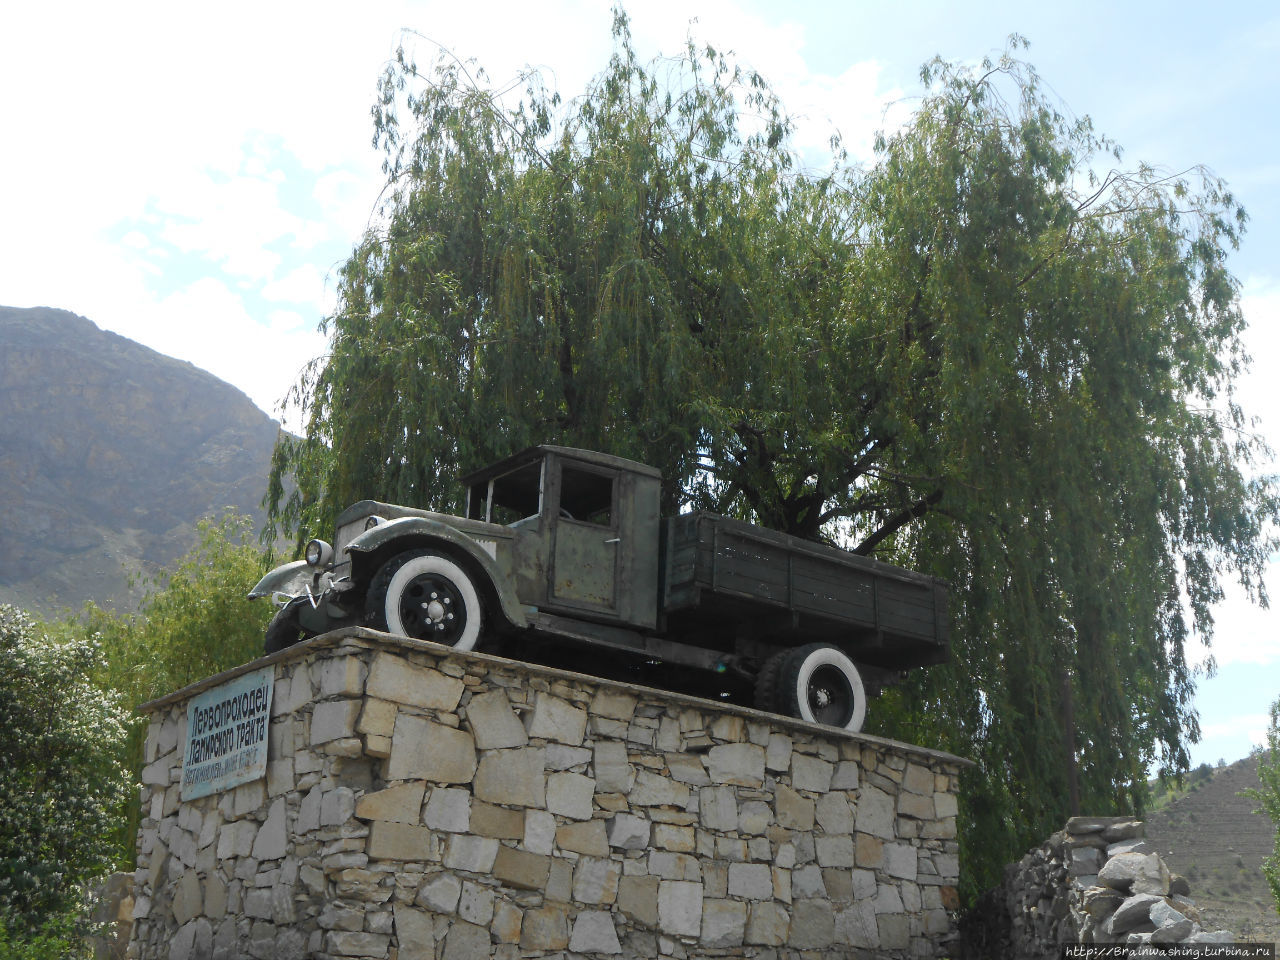 Памятник первопроходцу Памирского тракта (г. Хорог) Горно-Бадахшанская область, Таджикистан